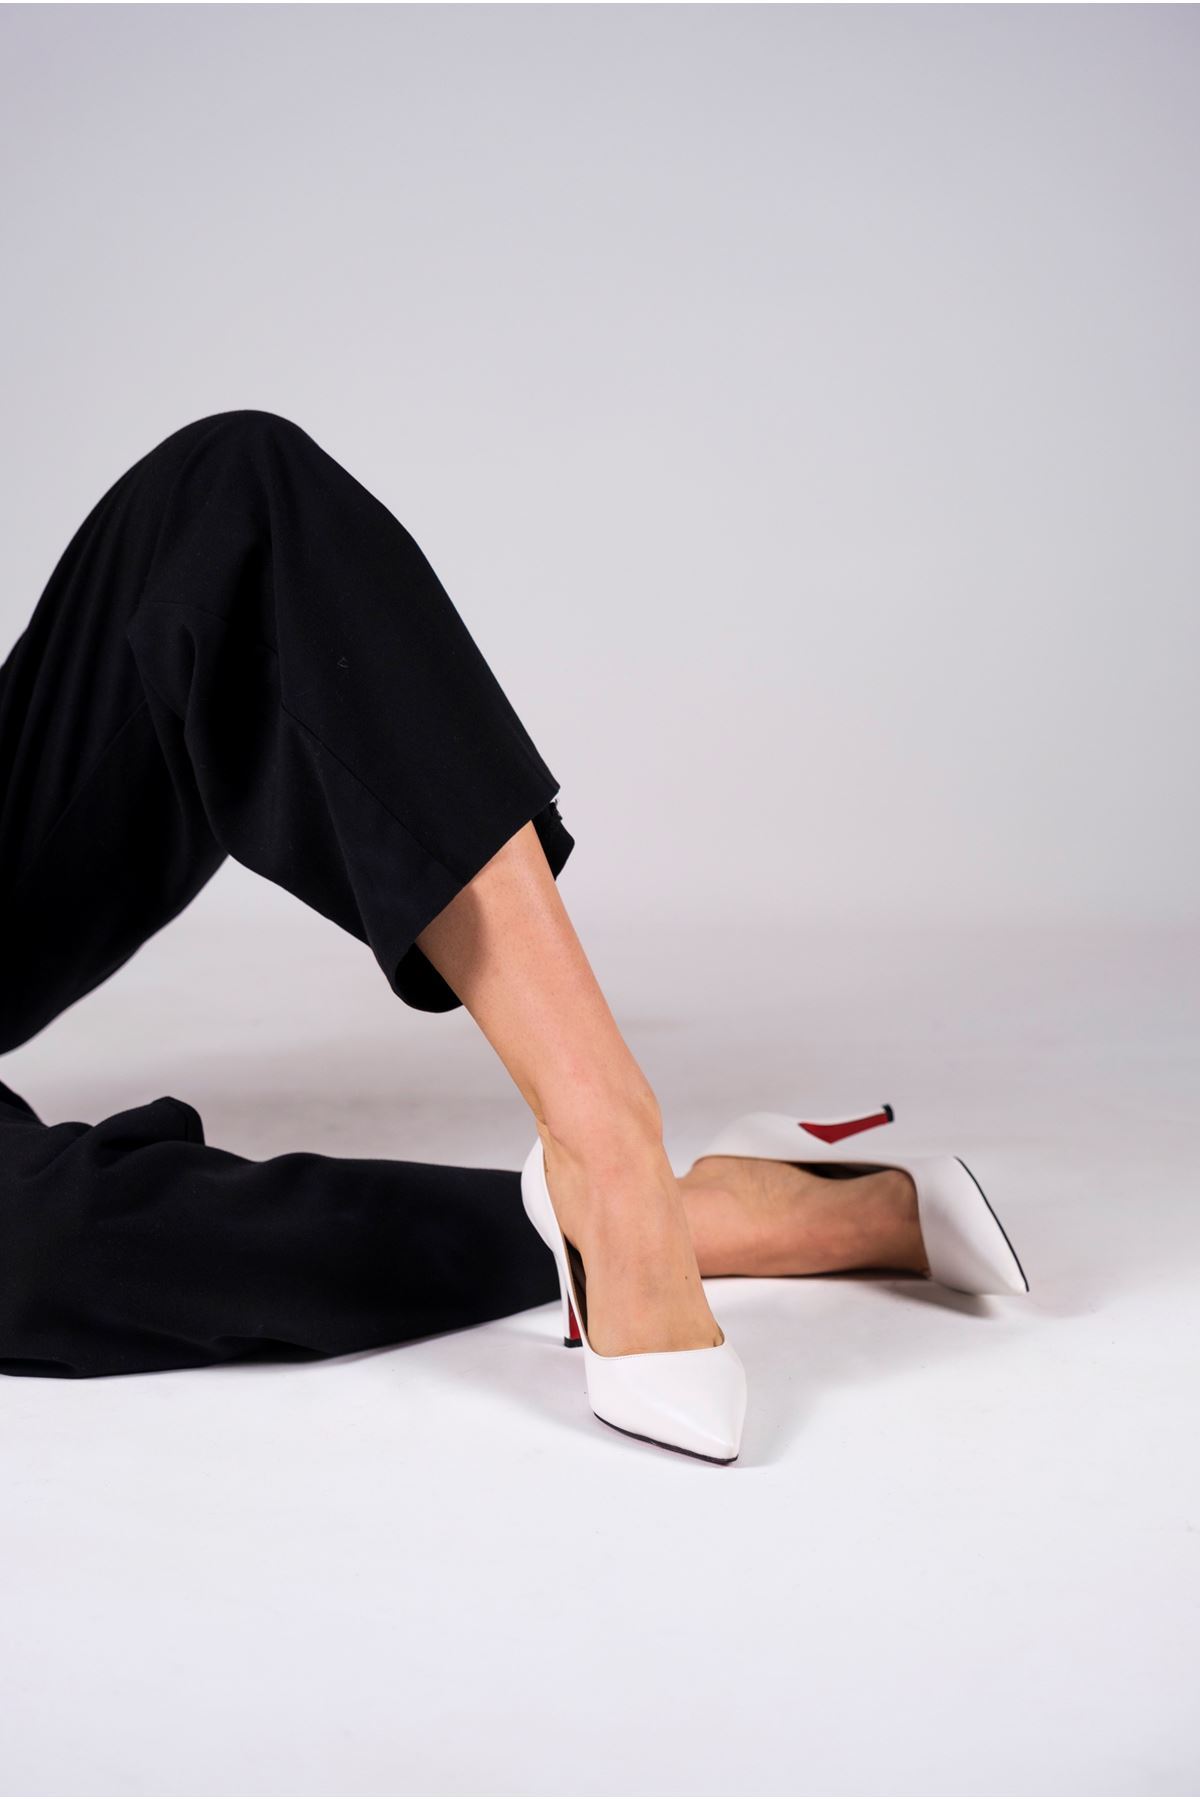 Beyaz Cilt  Kadın İnce Topuklu Ayakkabı Stiletto Demure